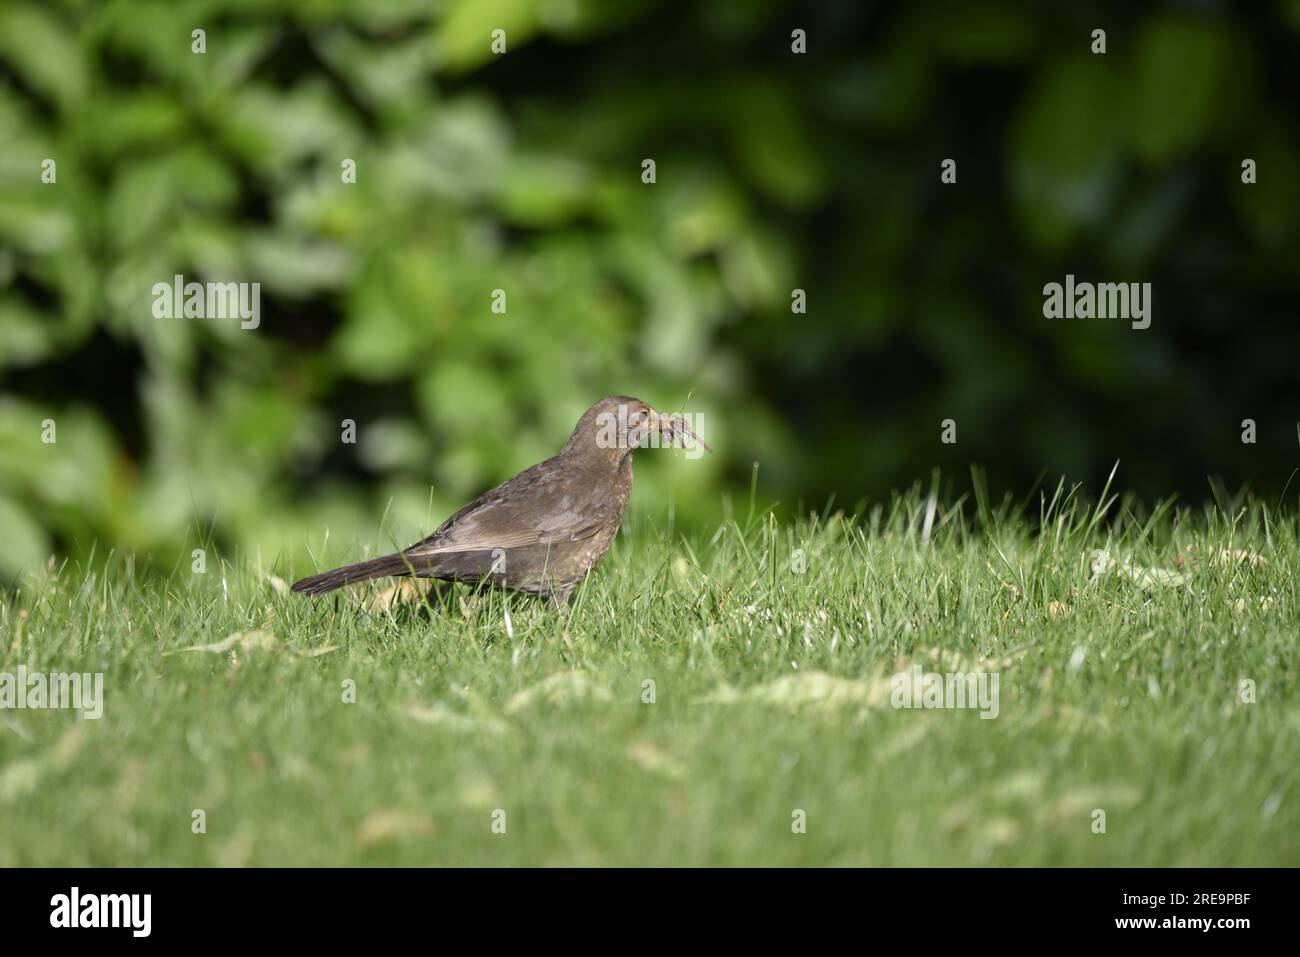 Primo piano, immagine di profilo destro di un uccello nero femmina comune (Turdus merula) in piedi su erba corta con un becco pieno di vermi, in una giornata di sole nel Regno Unito Foto Stock